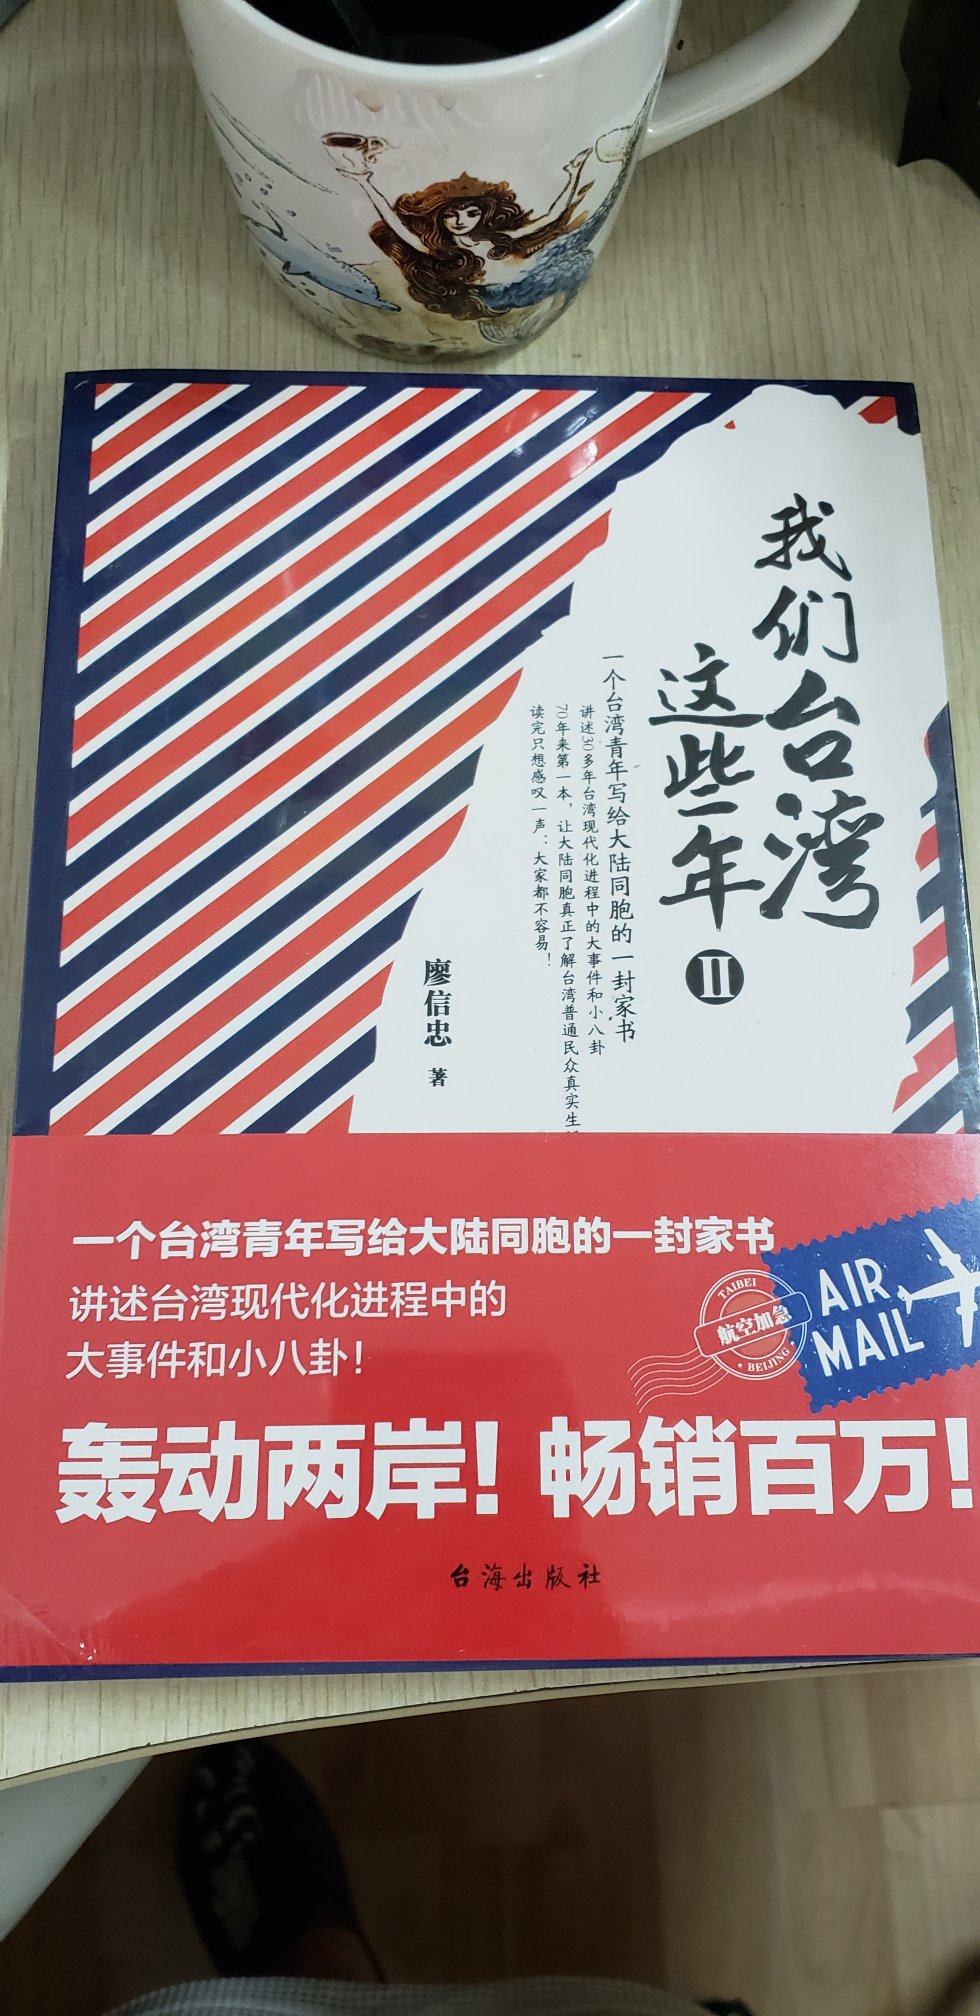 一直很想拜读这本书，印刷质量不错，不知道去台湾前看看，会不会对旅行有帮助？